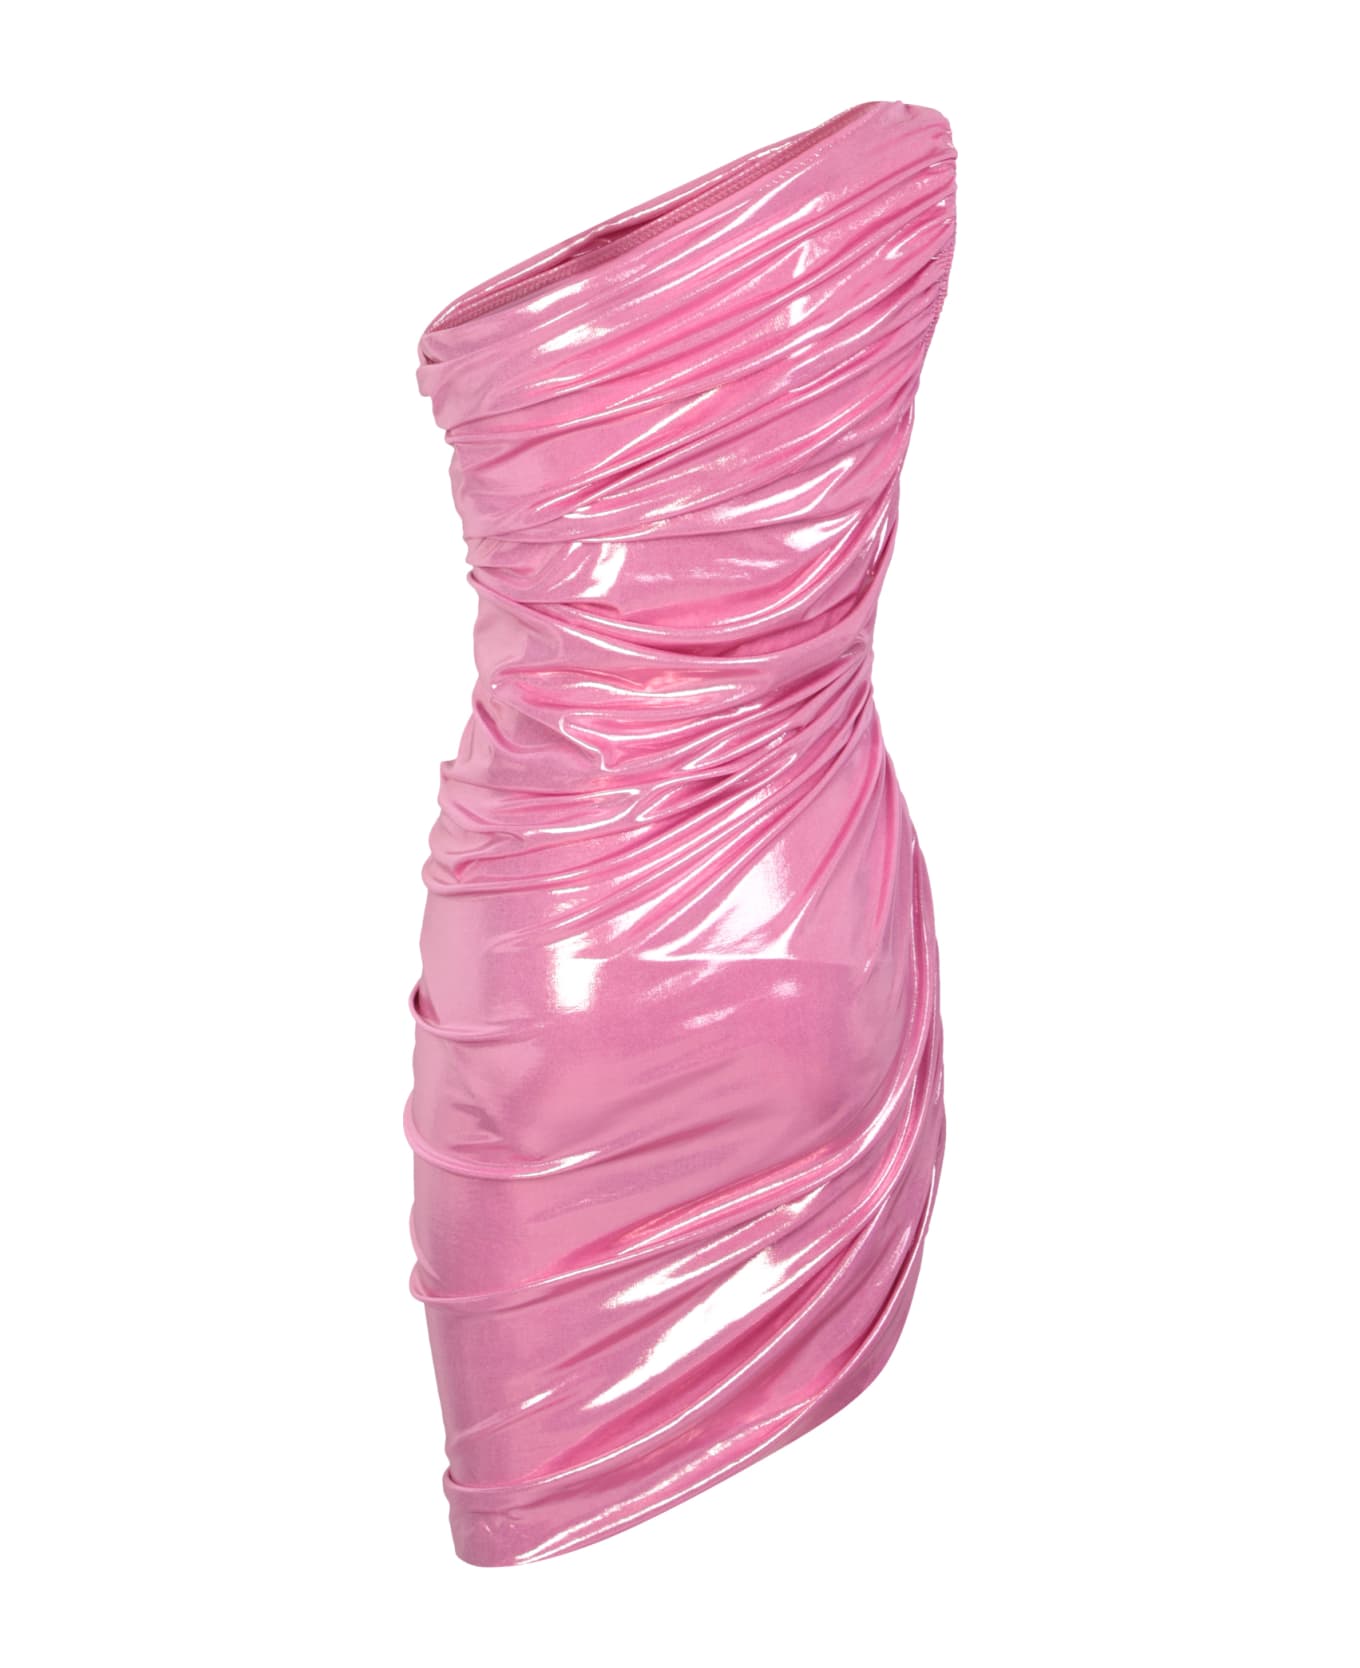 Norma Kamali Candy Pink Dress - Pink